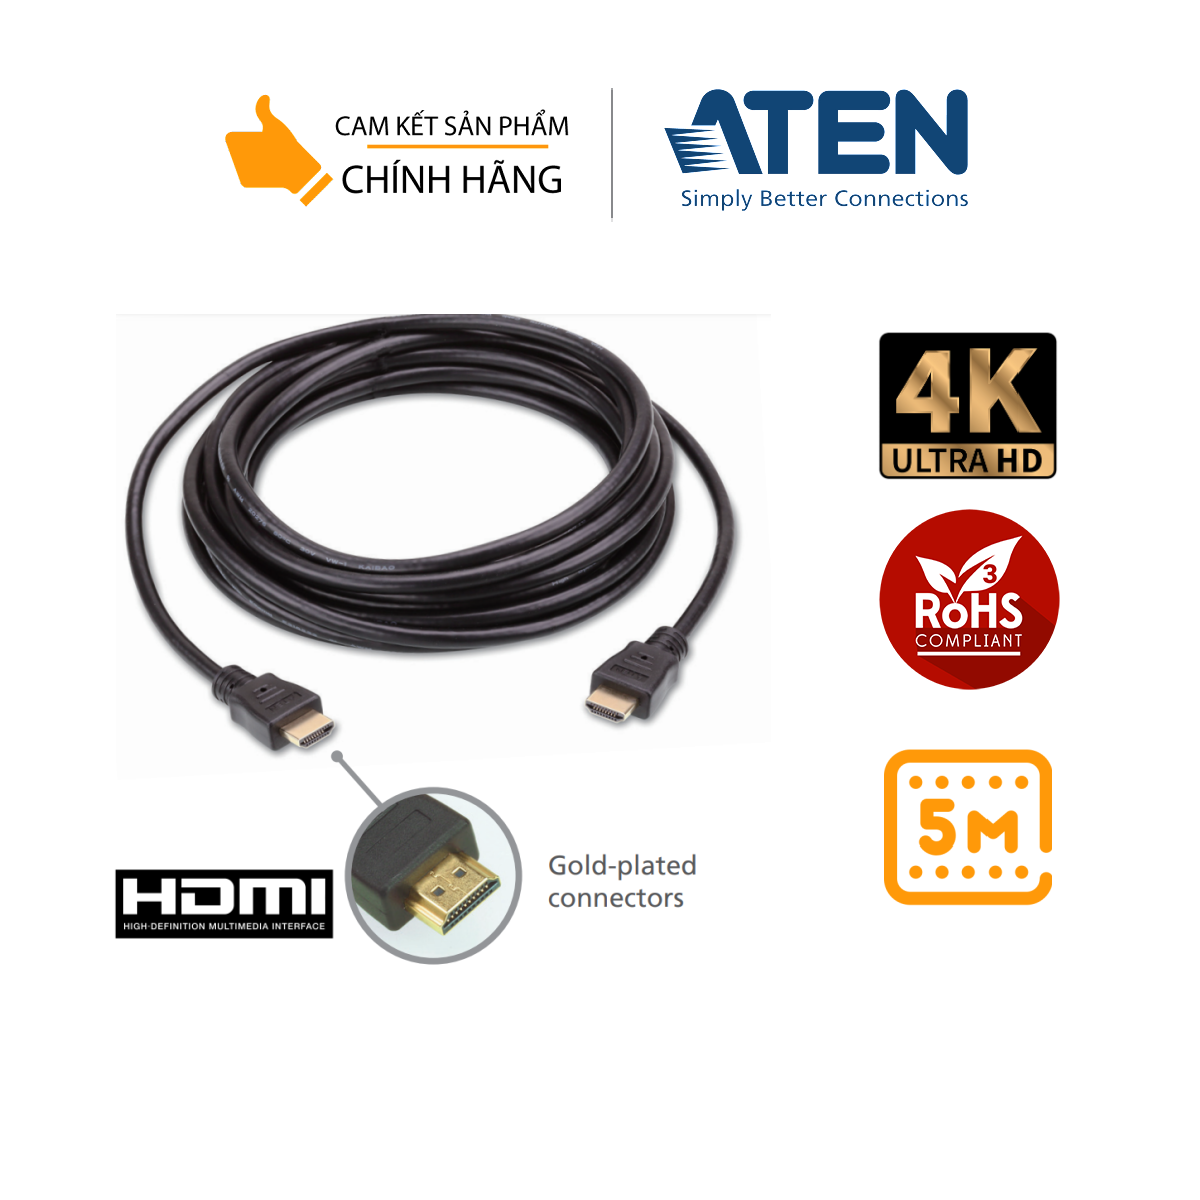 Dây cáp HDMI 5m Cao cấp 4K Aten 2L-7D05H Hỗ trợ 4K, 3D, Ethernet. 2 đầu mạ vàng, chất liệu đồng cao cấp có vỏ bọc chống nhiễu, vỏ PVC chống cháy UL VW-1, 30AWG, tiêu chuẩn EU RoHS – Hàng Chính hãng